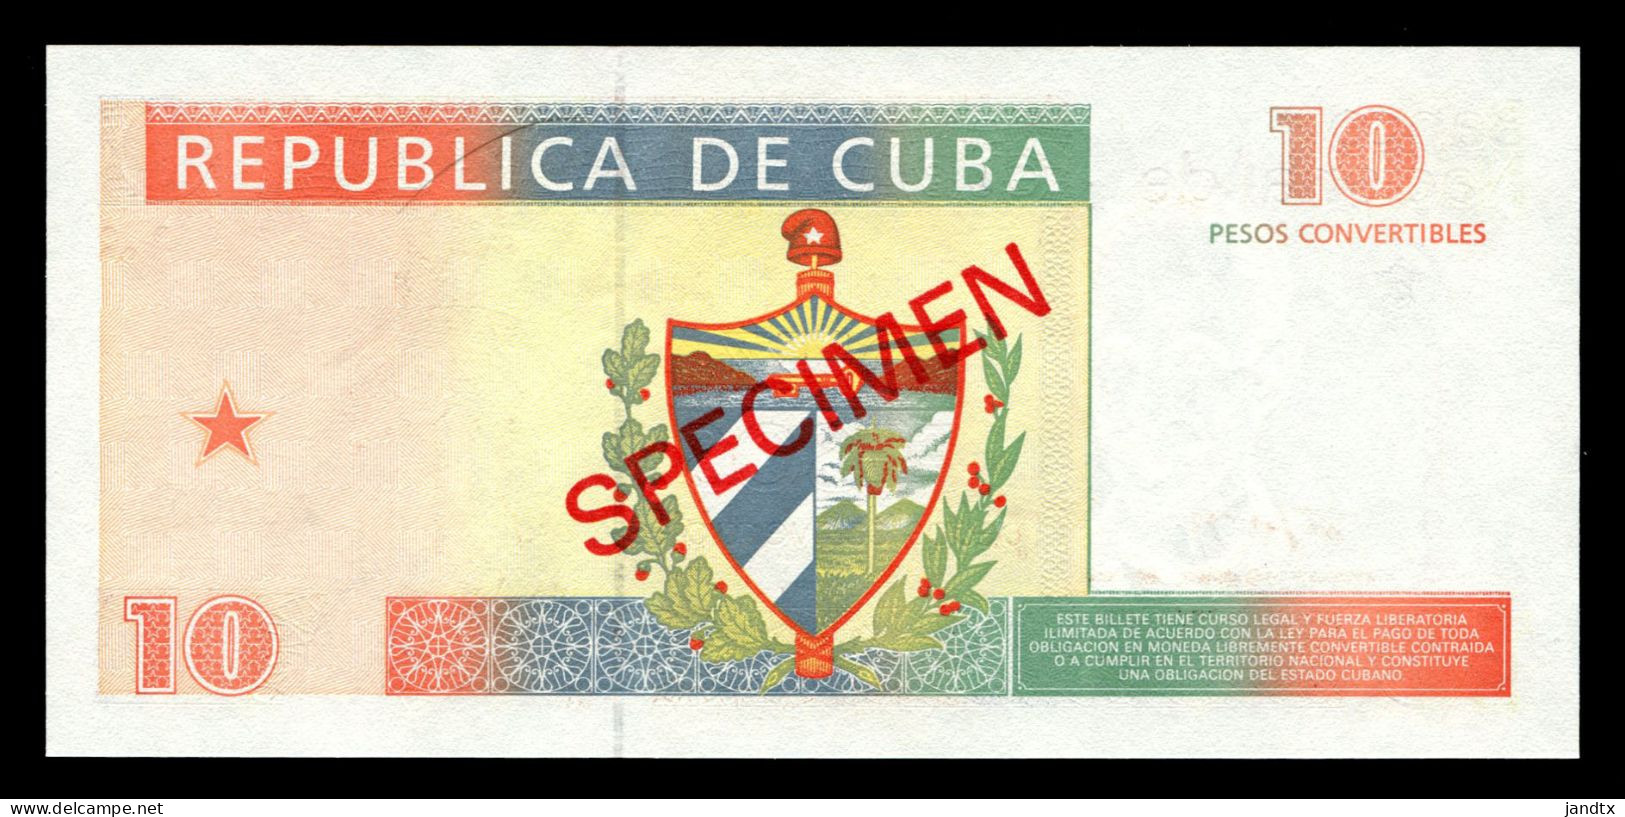 CUBA SET BILLETES CUC SPECIMEN 1994 SC UNC